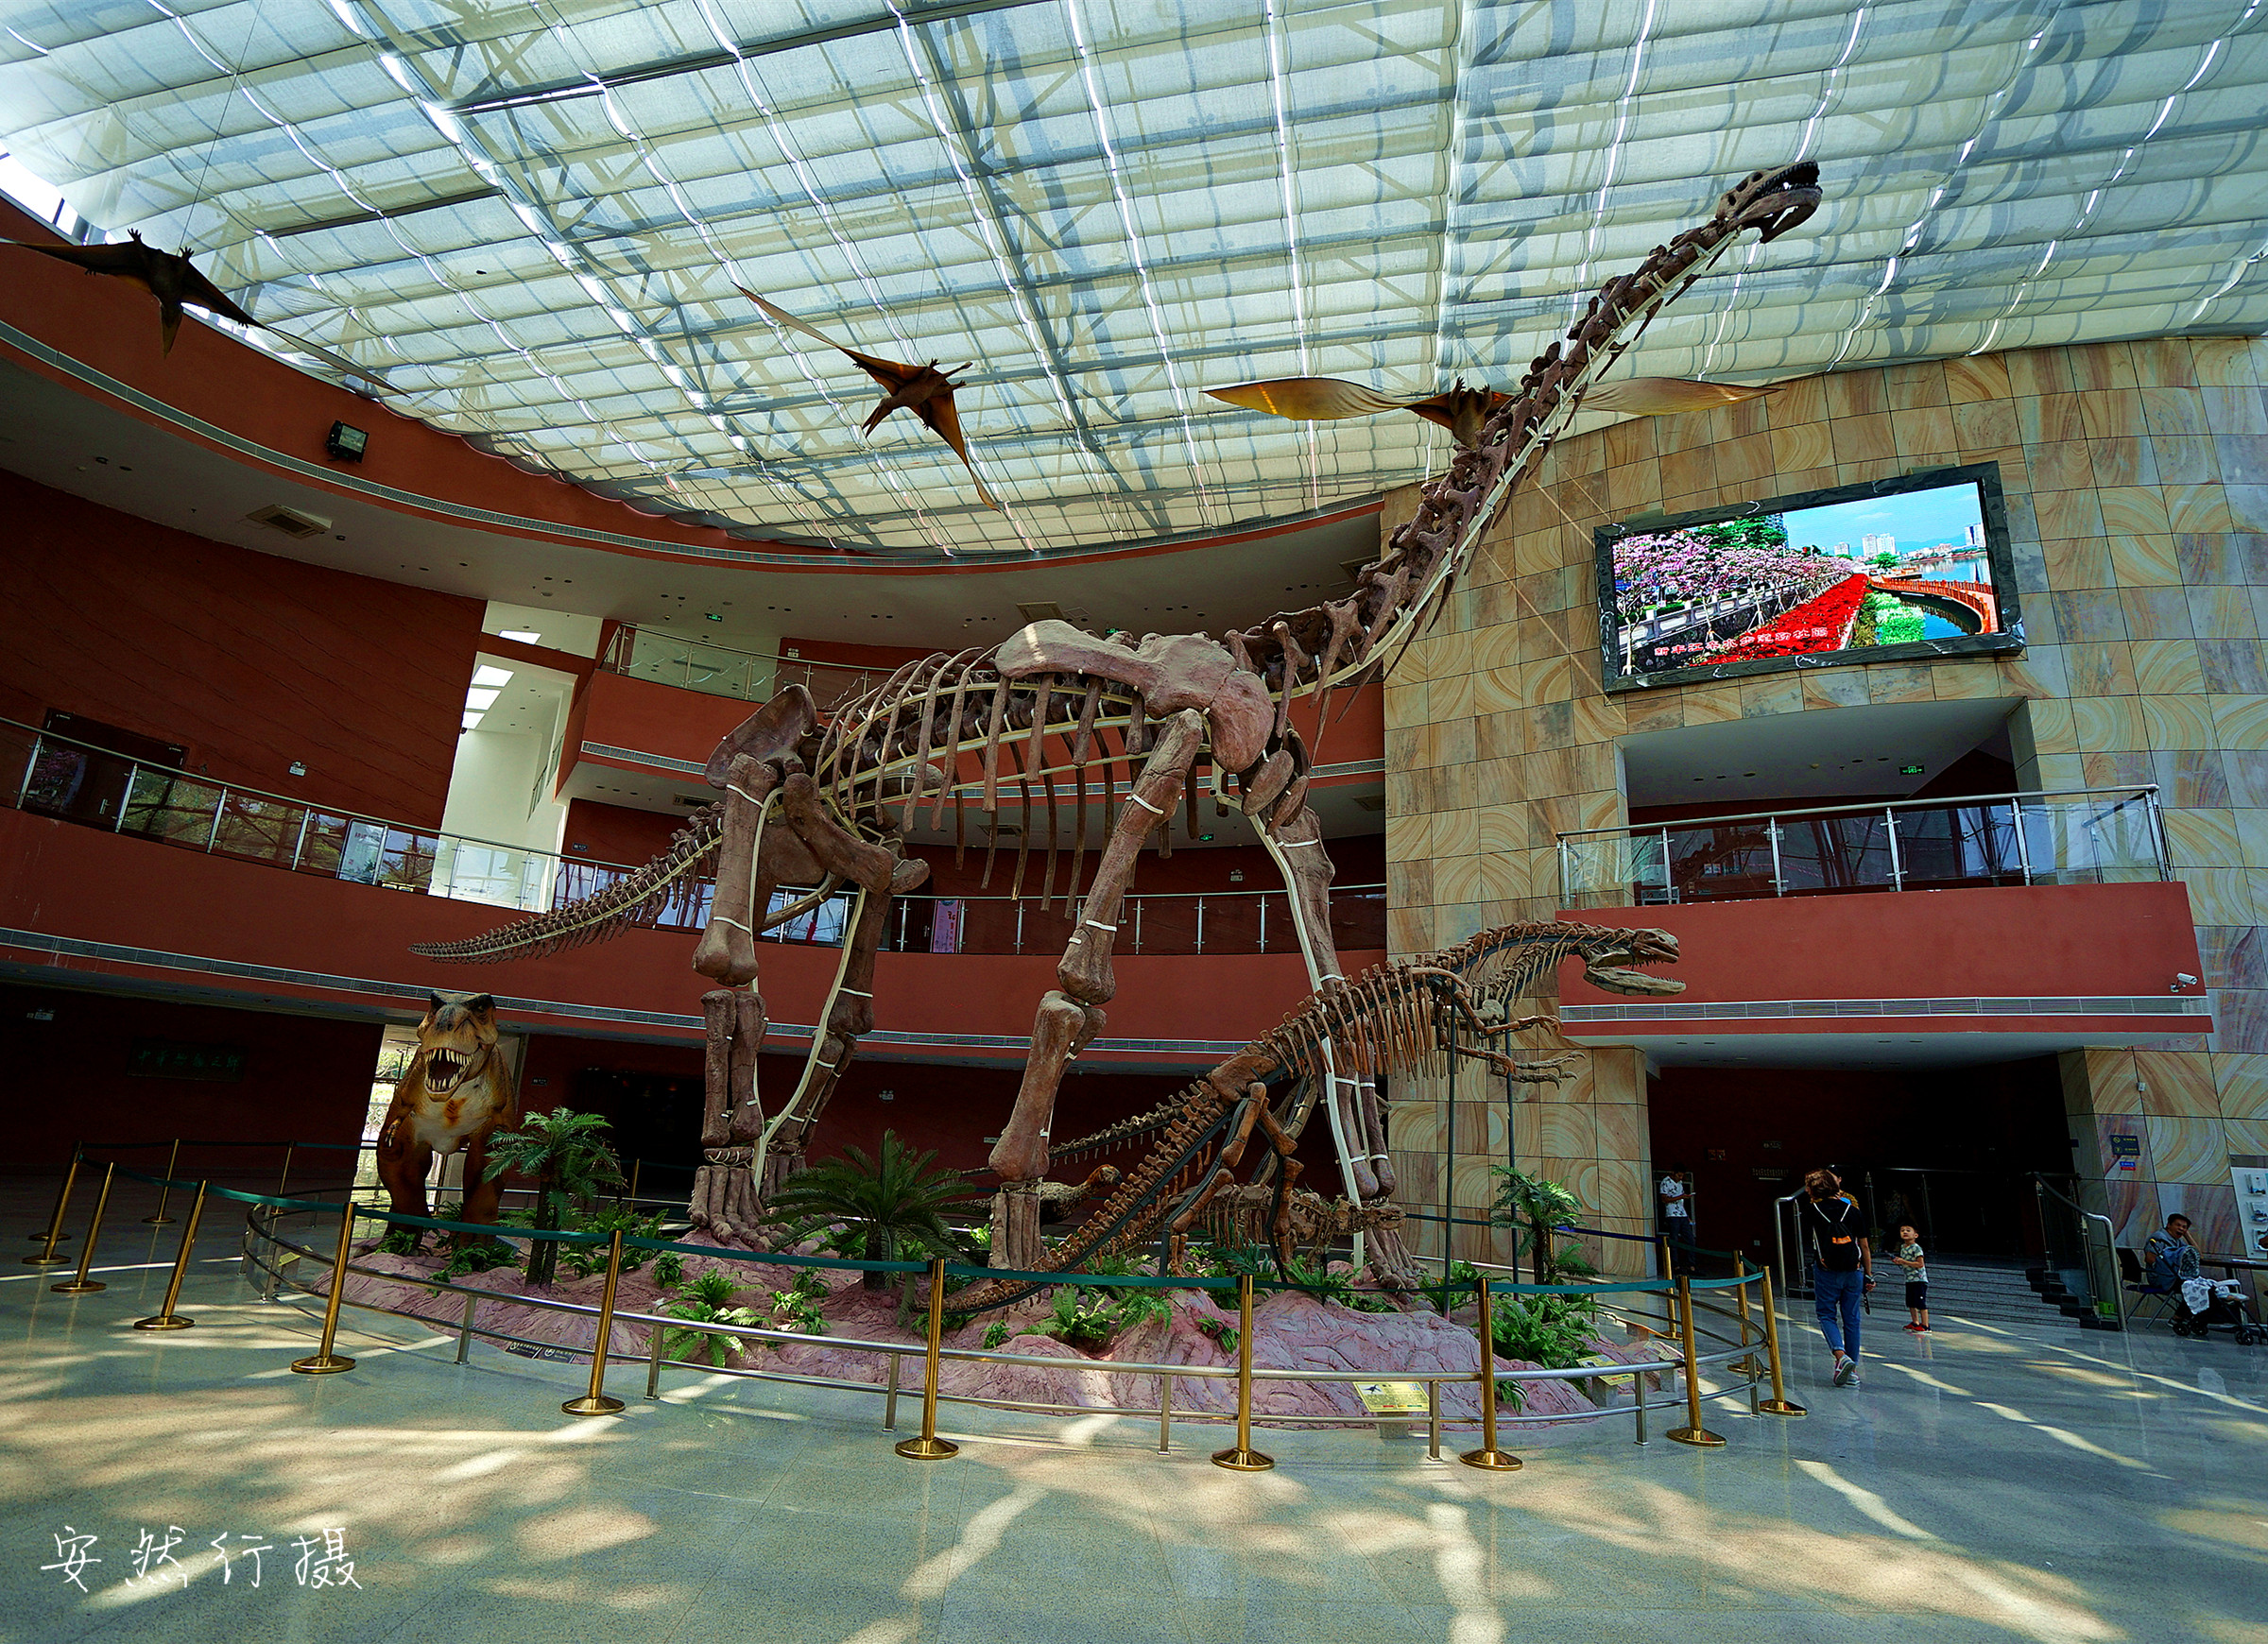 中国古动物馆恐龙蛋馆又名河源恐龙博物馆,位于河源市区滨江大道旁